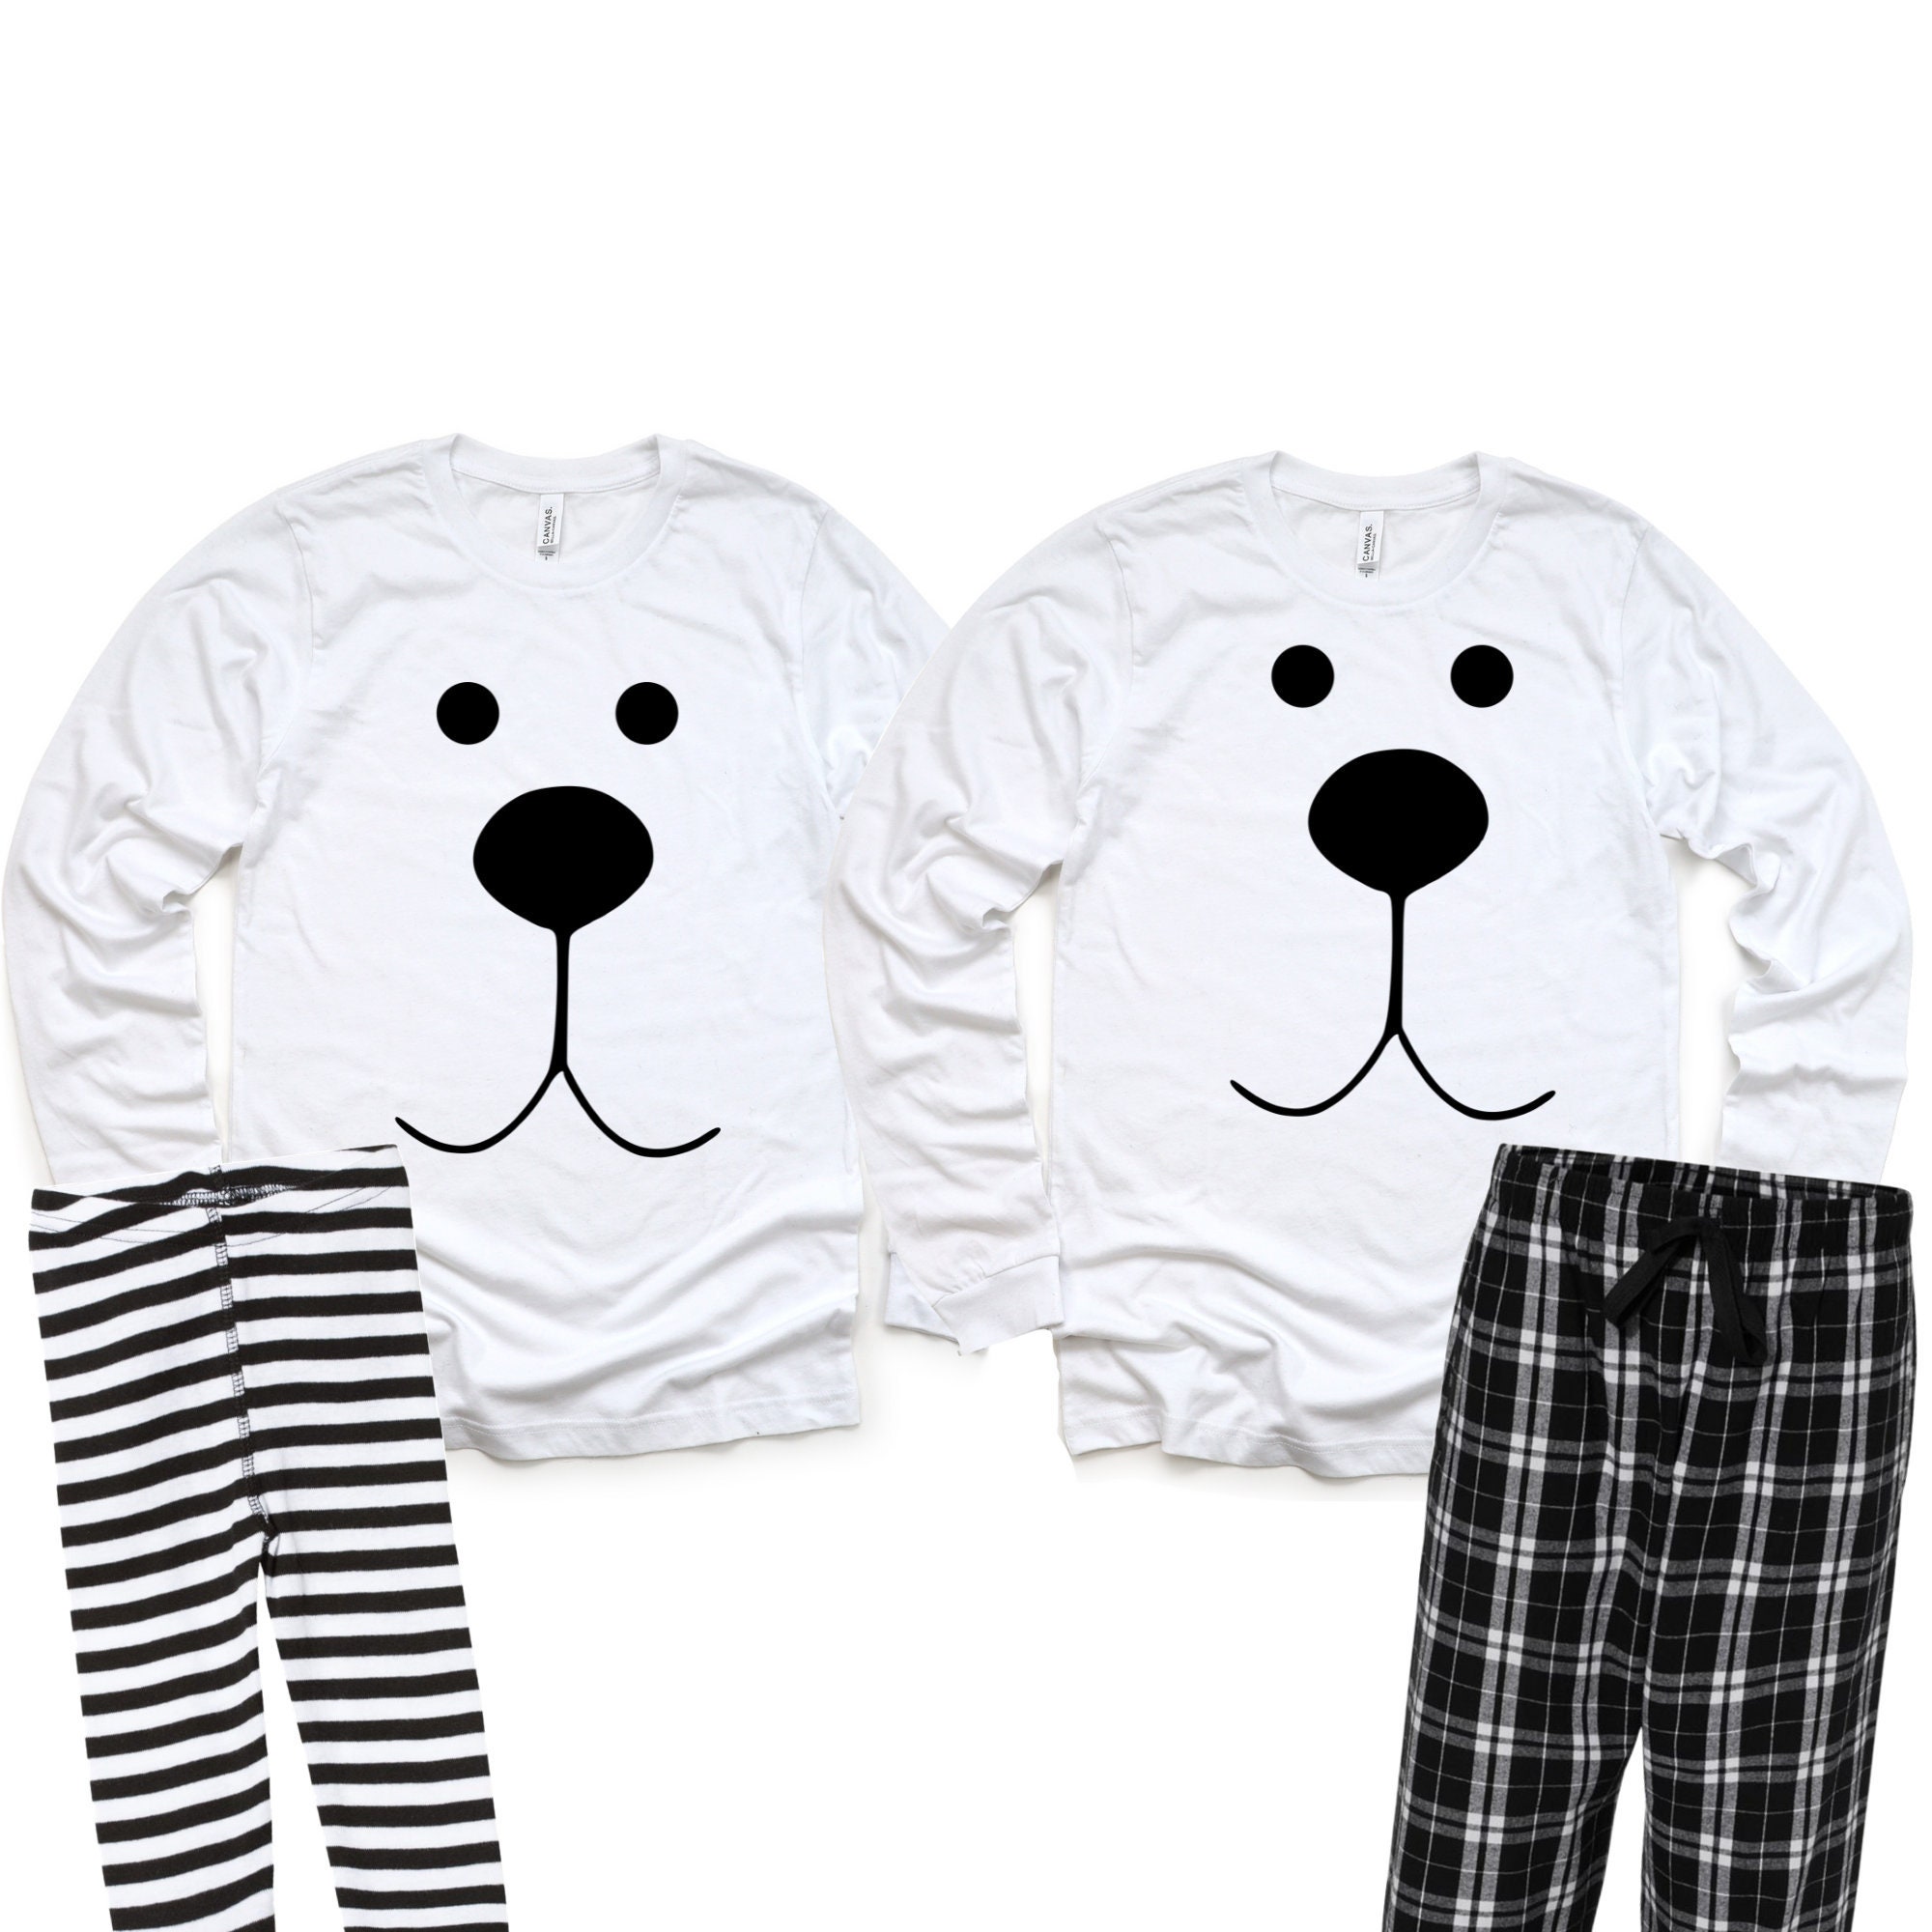 Polar Bear Pajamas, Christmas Pajamas, Matching Pajamas, Family